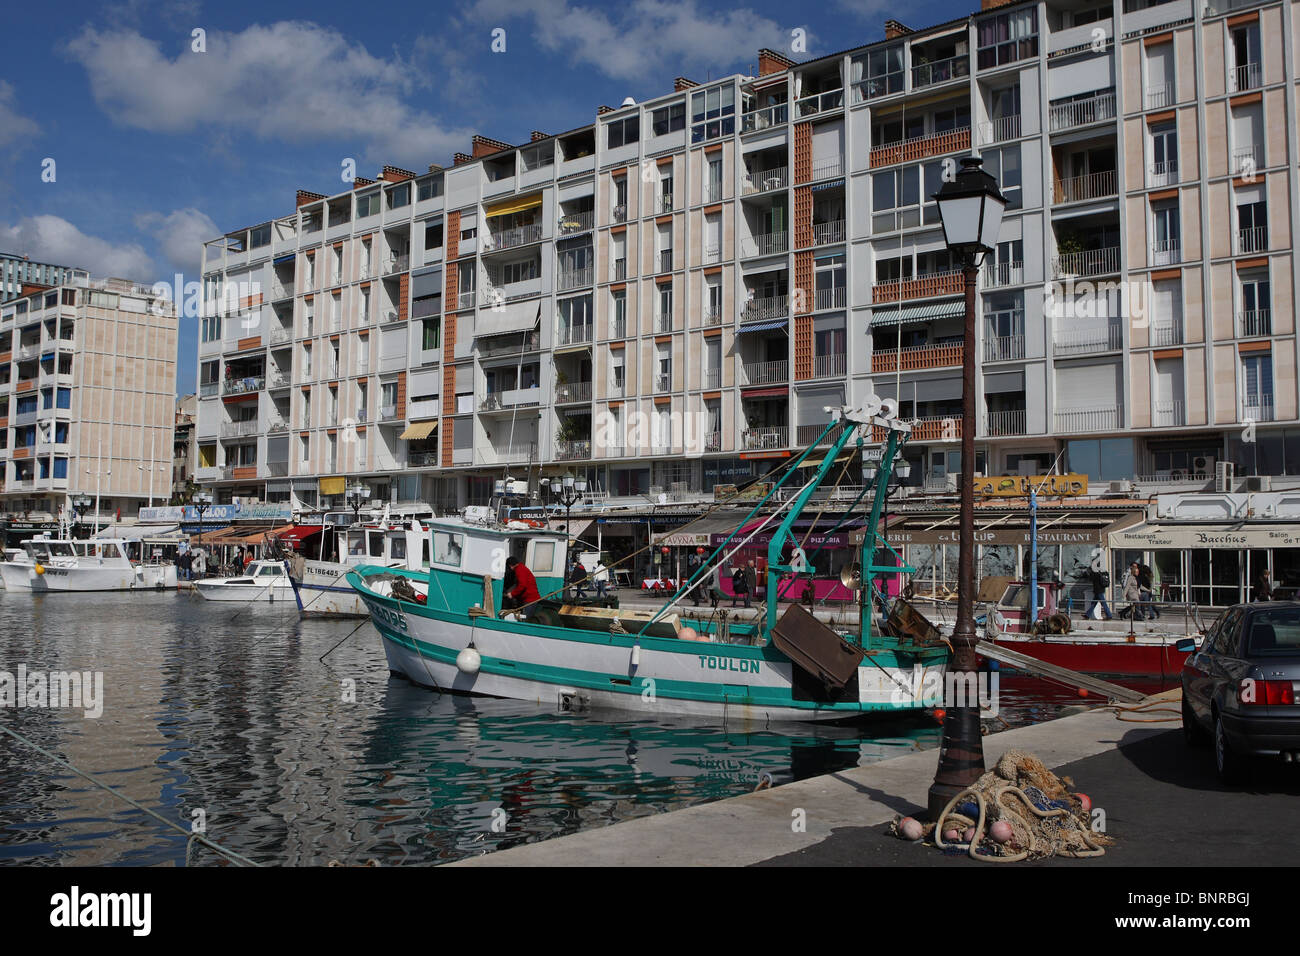 Les bateaux de pêche et des cafés dans le port de Toulon, Var, Cote d'Azur, Provence, France, Europe Banque D'Images